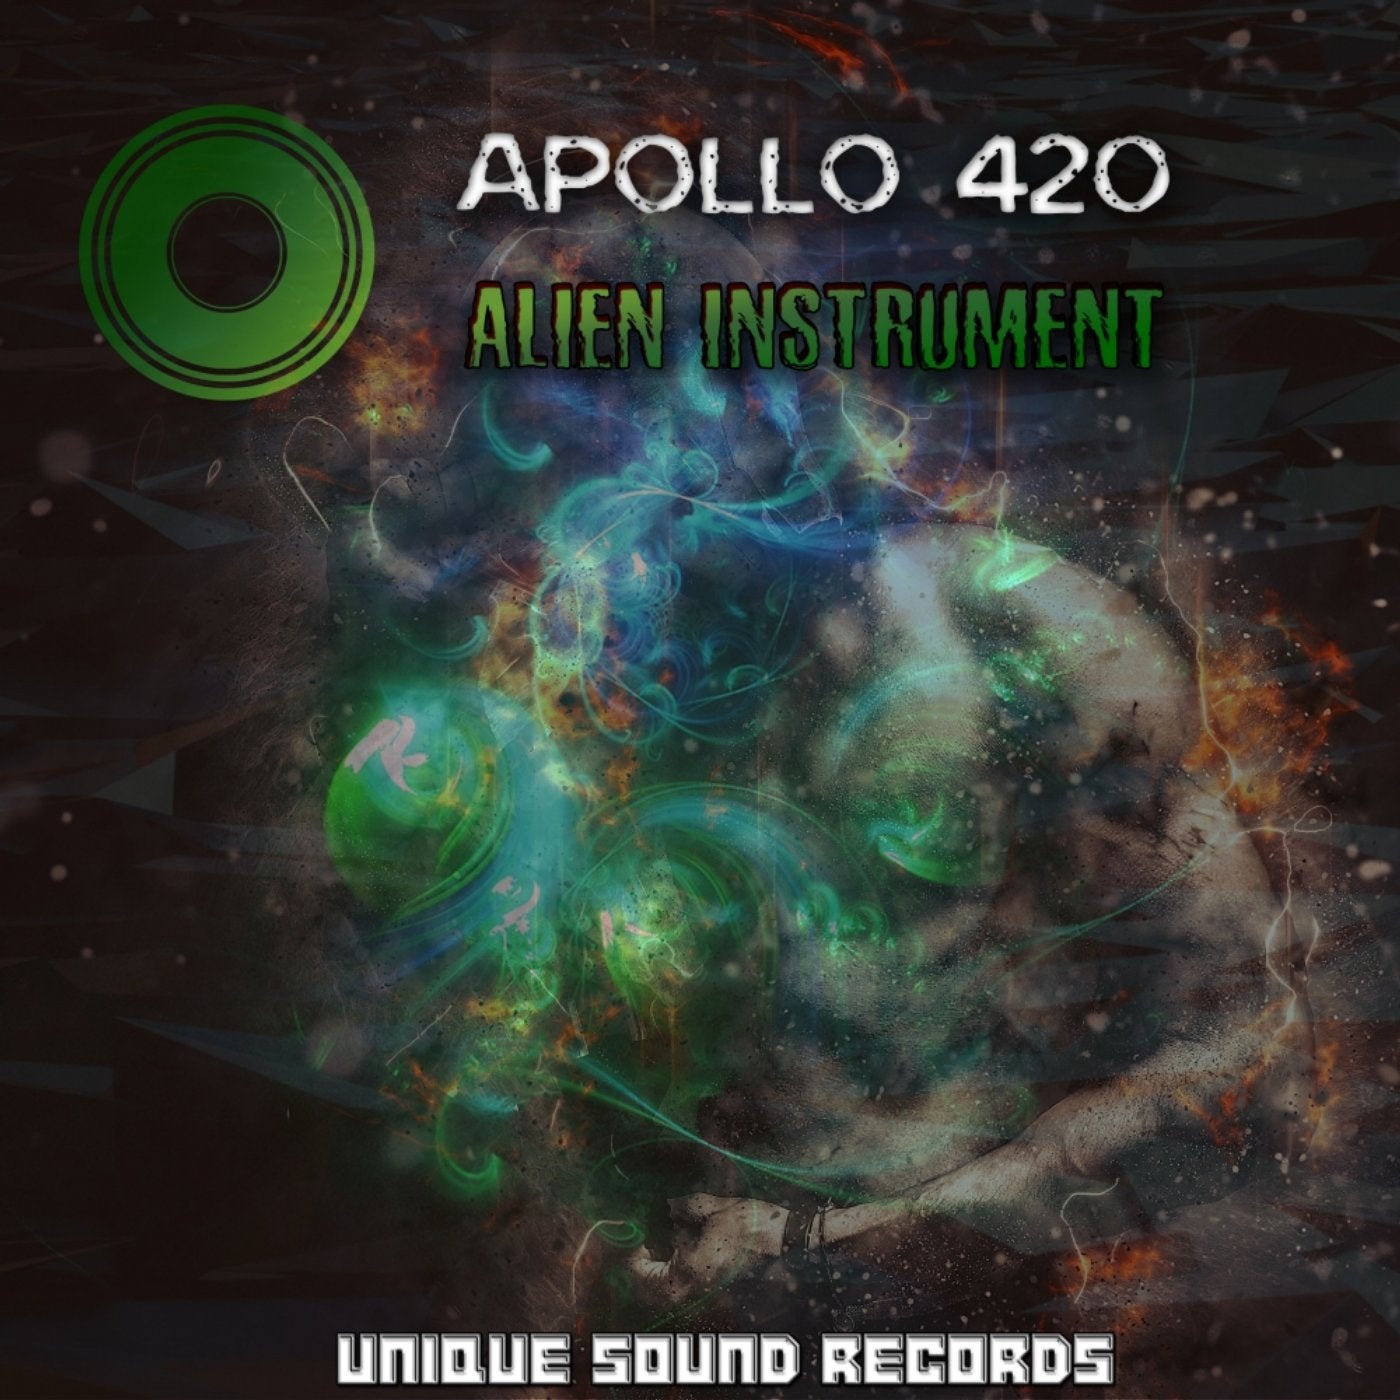 Alien Instrument